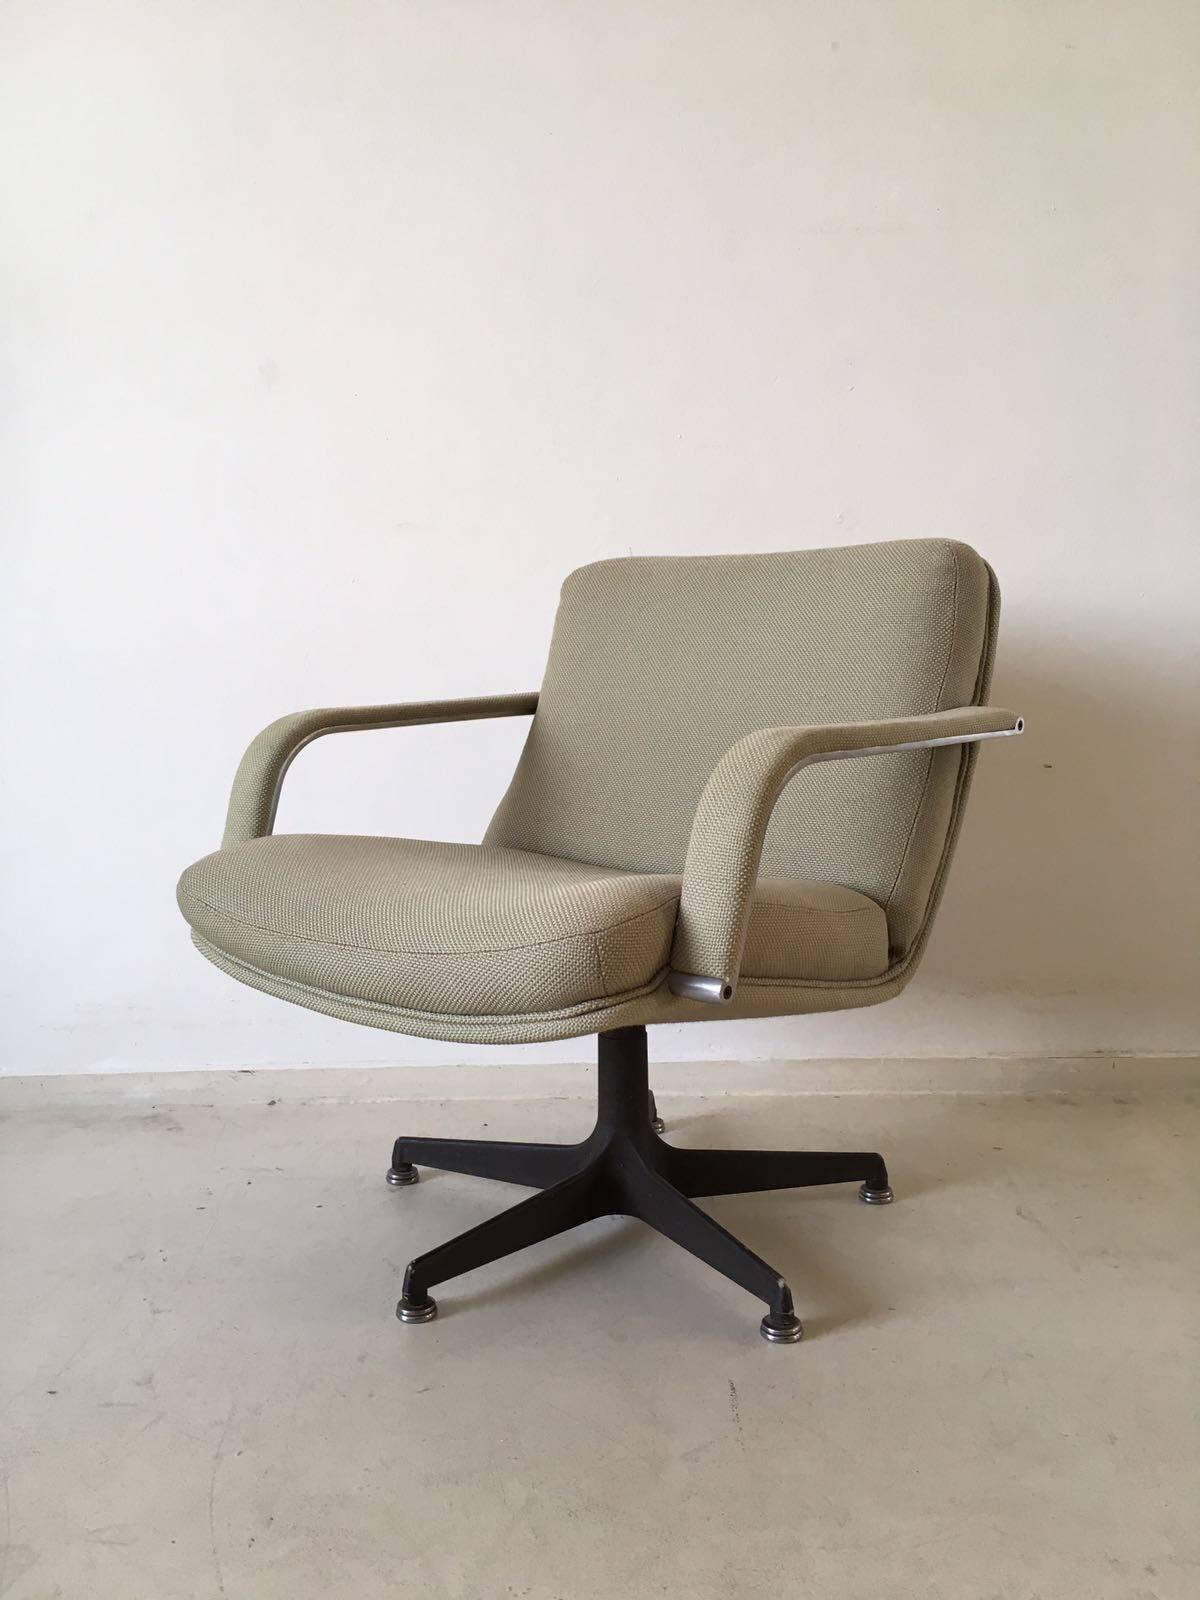 Original fauteuil de salon pivotant hollandais des années 1970 par Geoffrey Harcourt pour Artifort. La chaise est en très bon état et très confortable. La chaise est dotée d'un rembourrage en laine d'origine et d'un pied étoile rotatif en métal